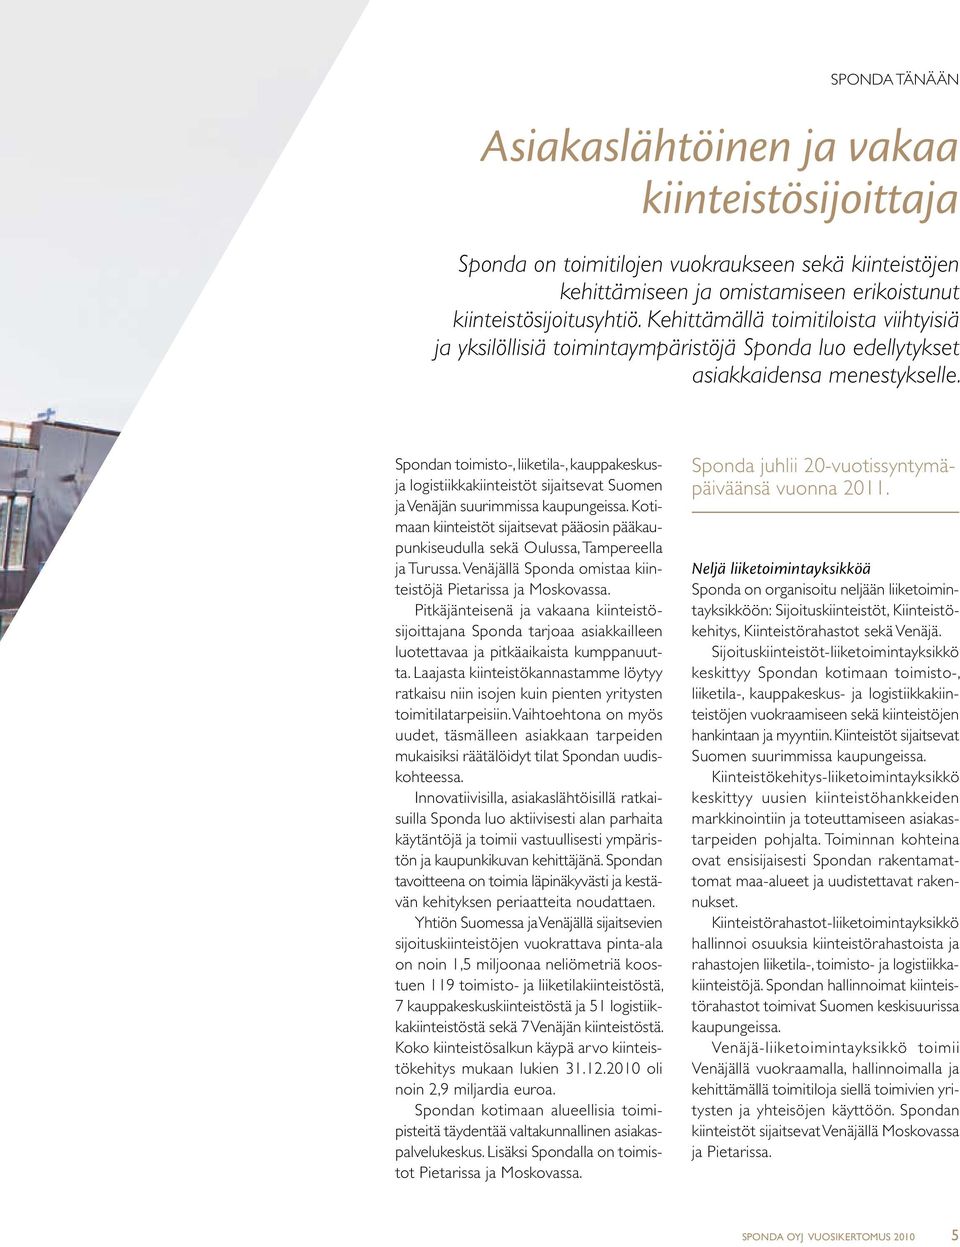 Spondan toimisto-, liiketila-, kauppakeskusja logistiikkakiinteistöt sijaitsevat Suomen ja Venäjän suurimmissa kaupungeissa.